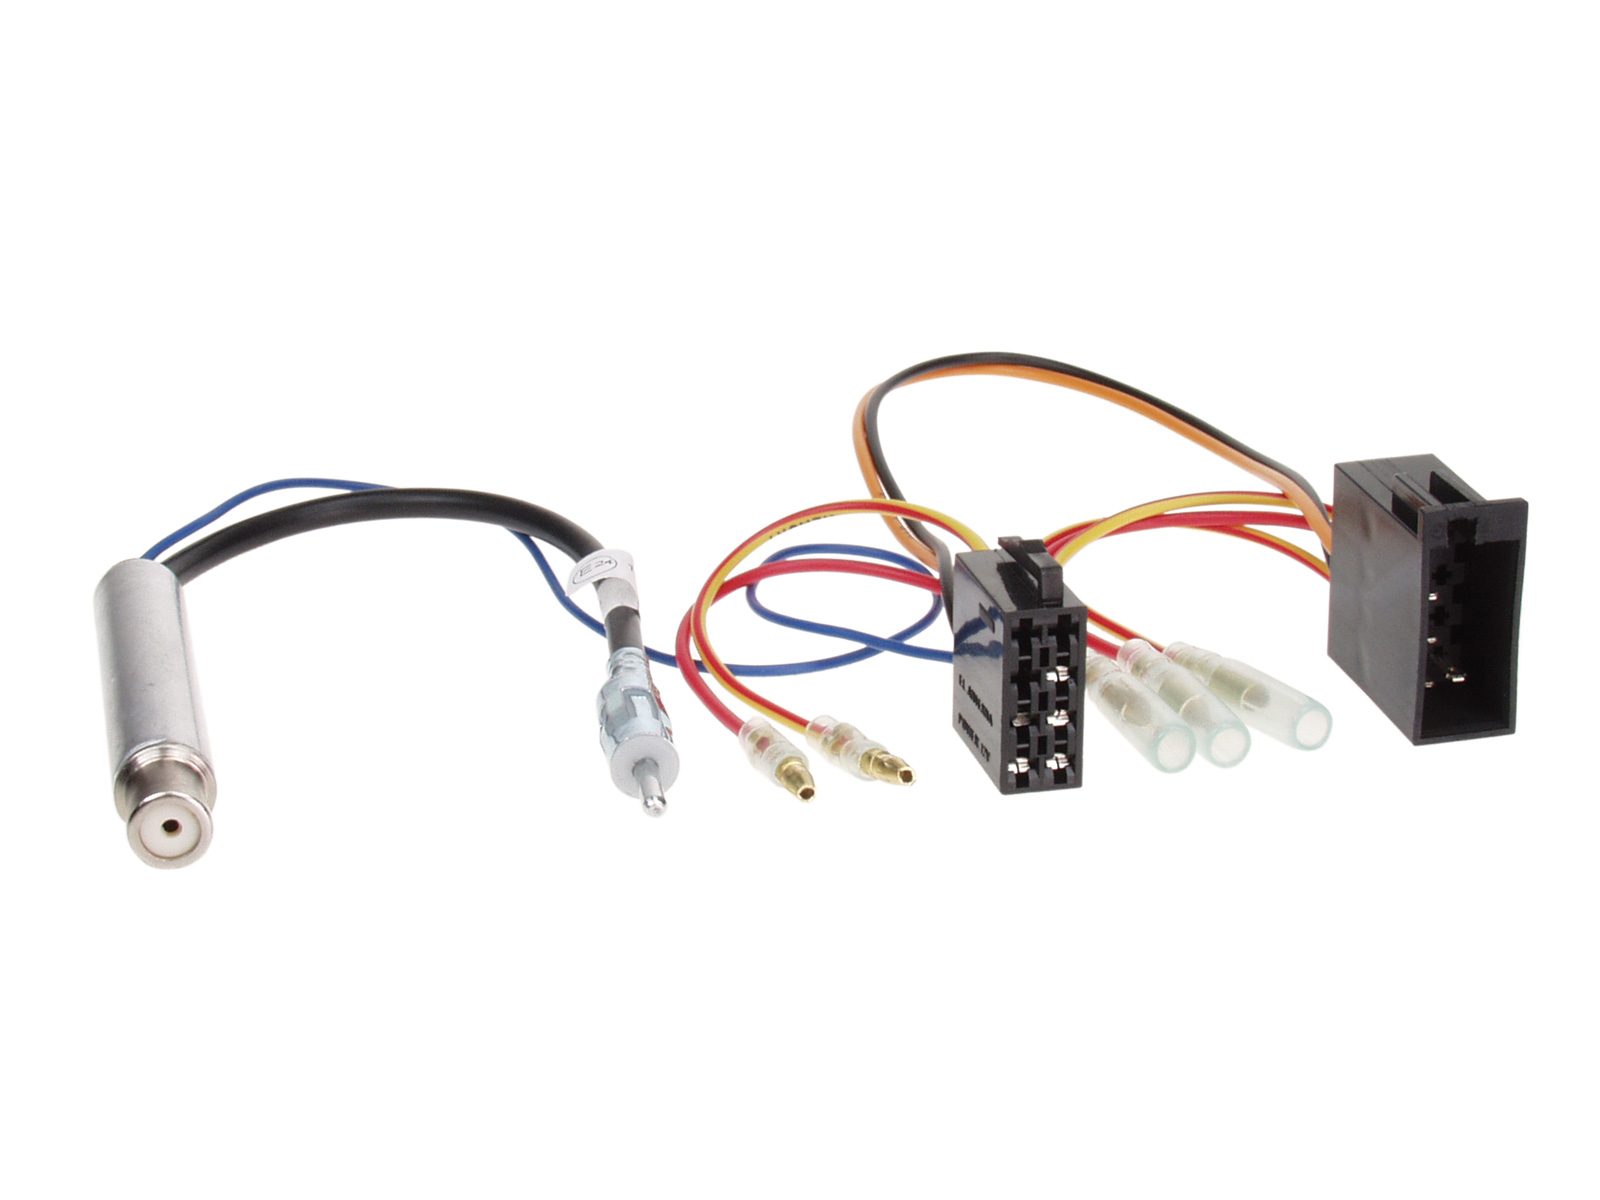 Antennenadapter kompatibel mit Seat Phantomspeisung u. ISO Stromanschluß ab Bj. 1998 adaptiert von ISO (f) auf DIN (m)